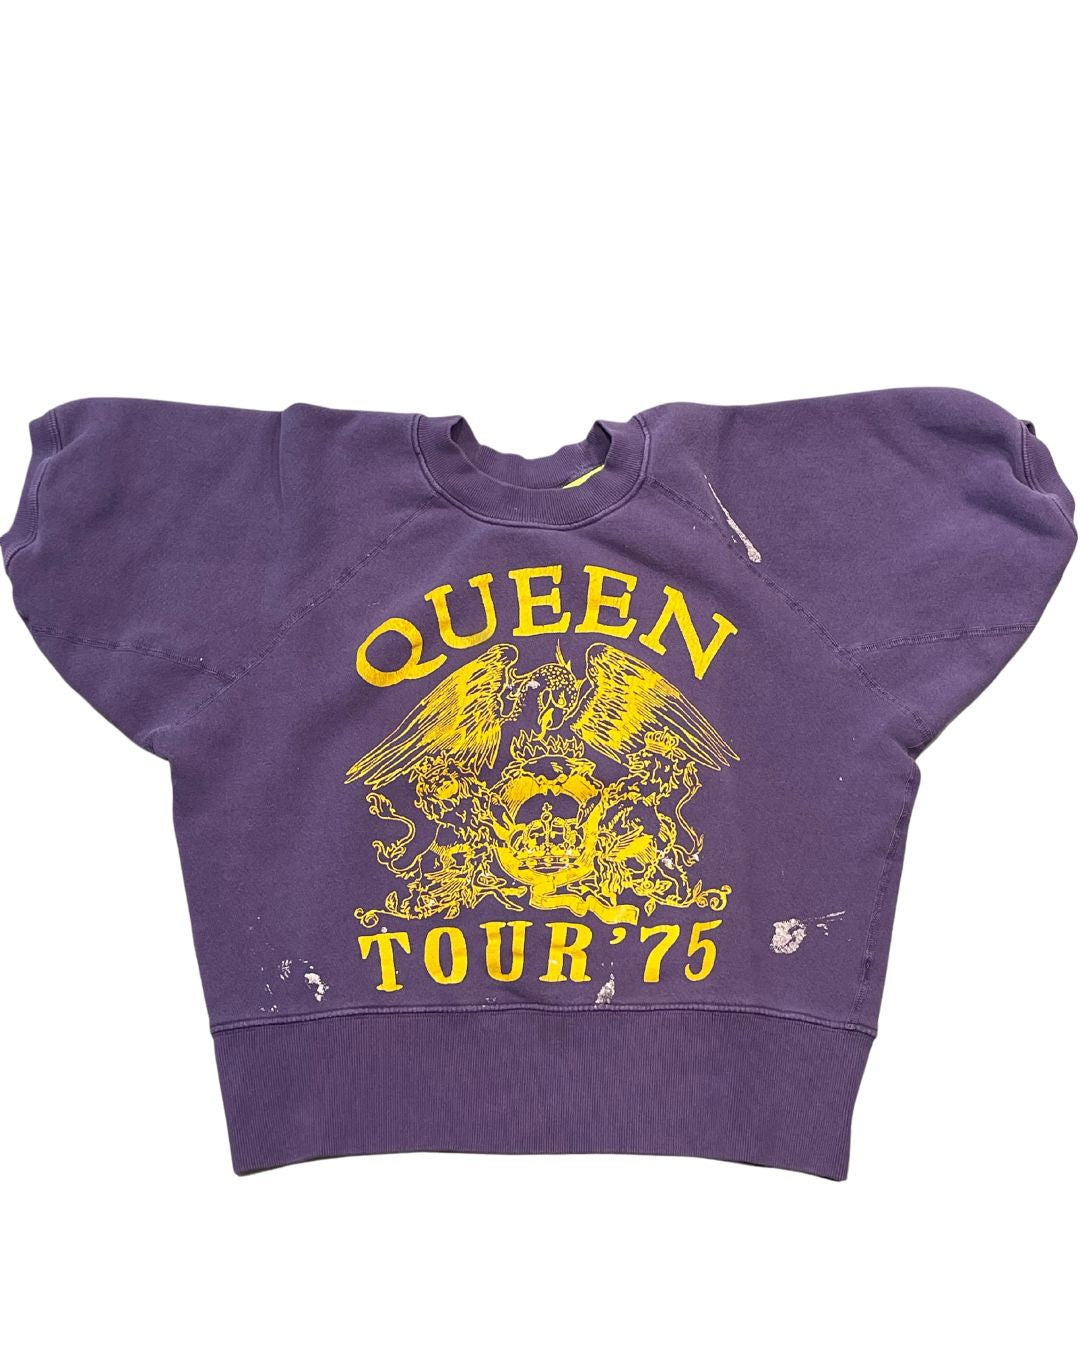 Queen short sleeve sweatshirt